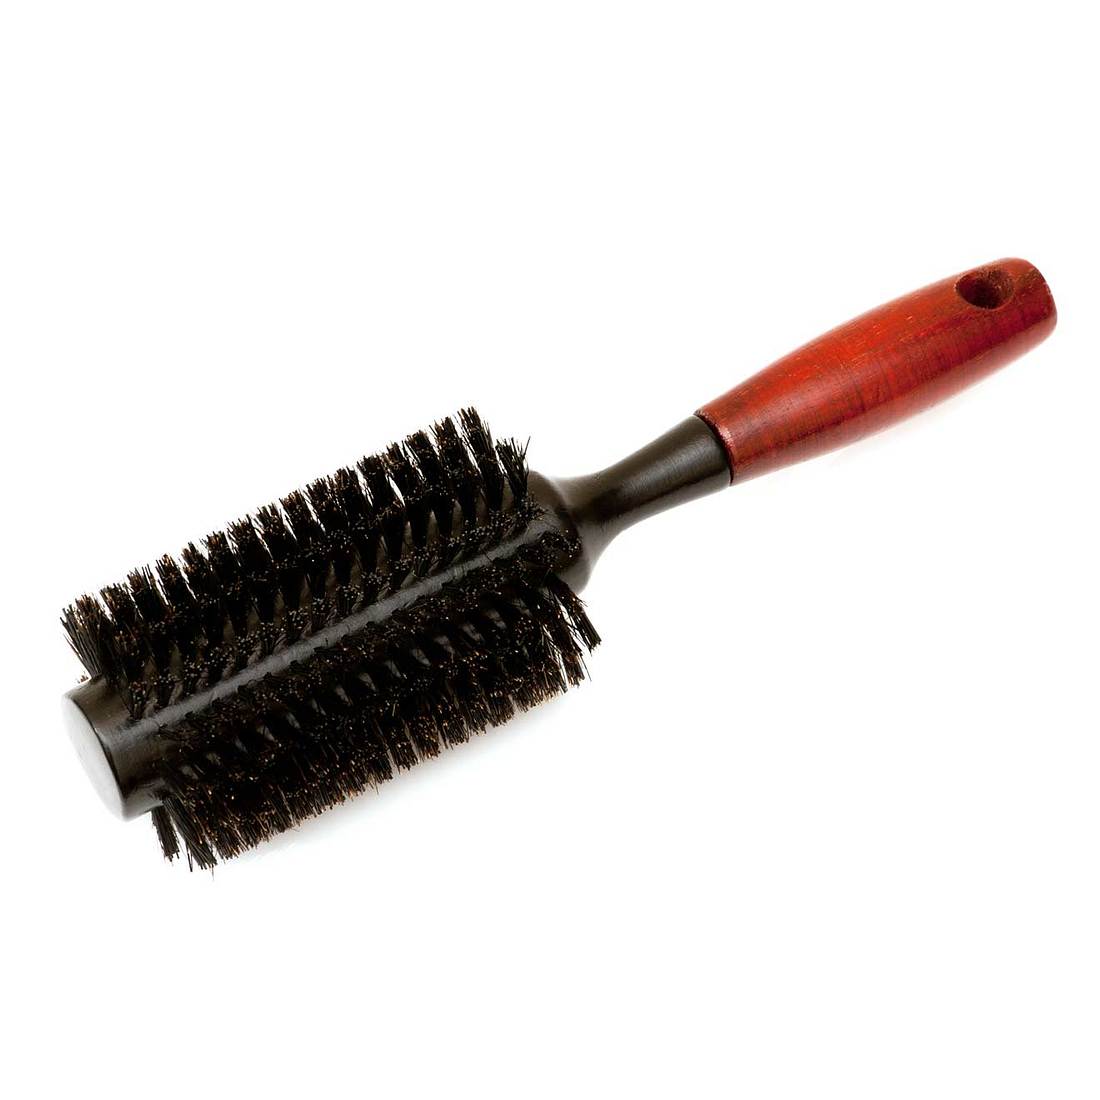 Frisieren mit Naturborsten, schonende Haarbürste, haarbürste für empfindliche Kopfhaut, haarbürste für glanz, naturbürste, haar tipps, welche haarbürste